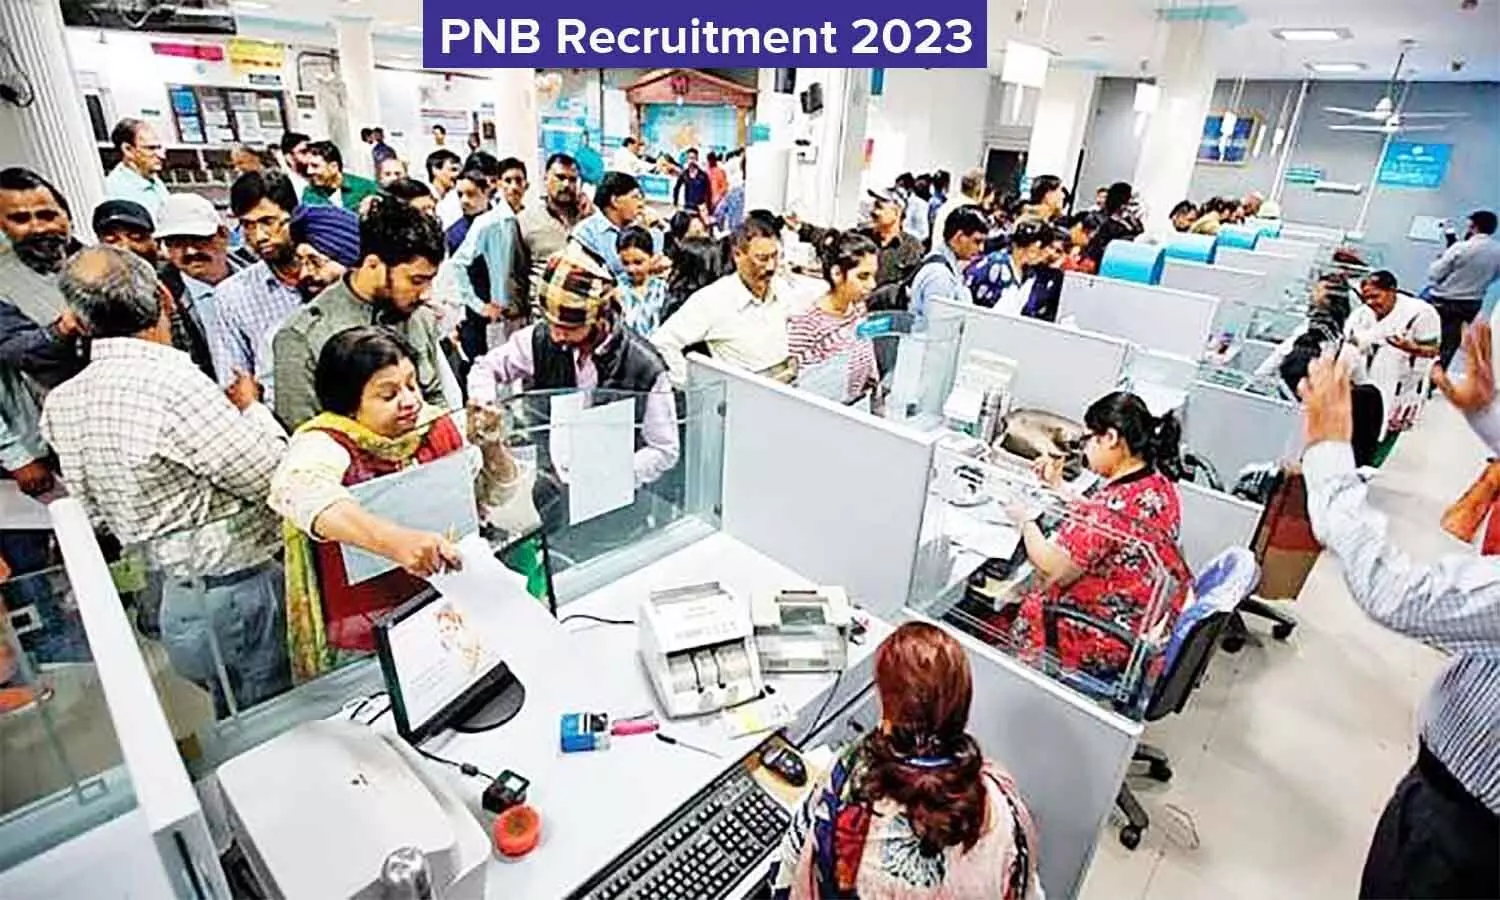 PNB Recruitment 2023: पंजाब नेशनल बैंक में निकली वैकेंसी, यहां पर जानें क्वालिफिकेशन व भर्ती संबंधी अन्य डिटेल्स